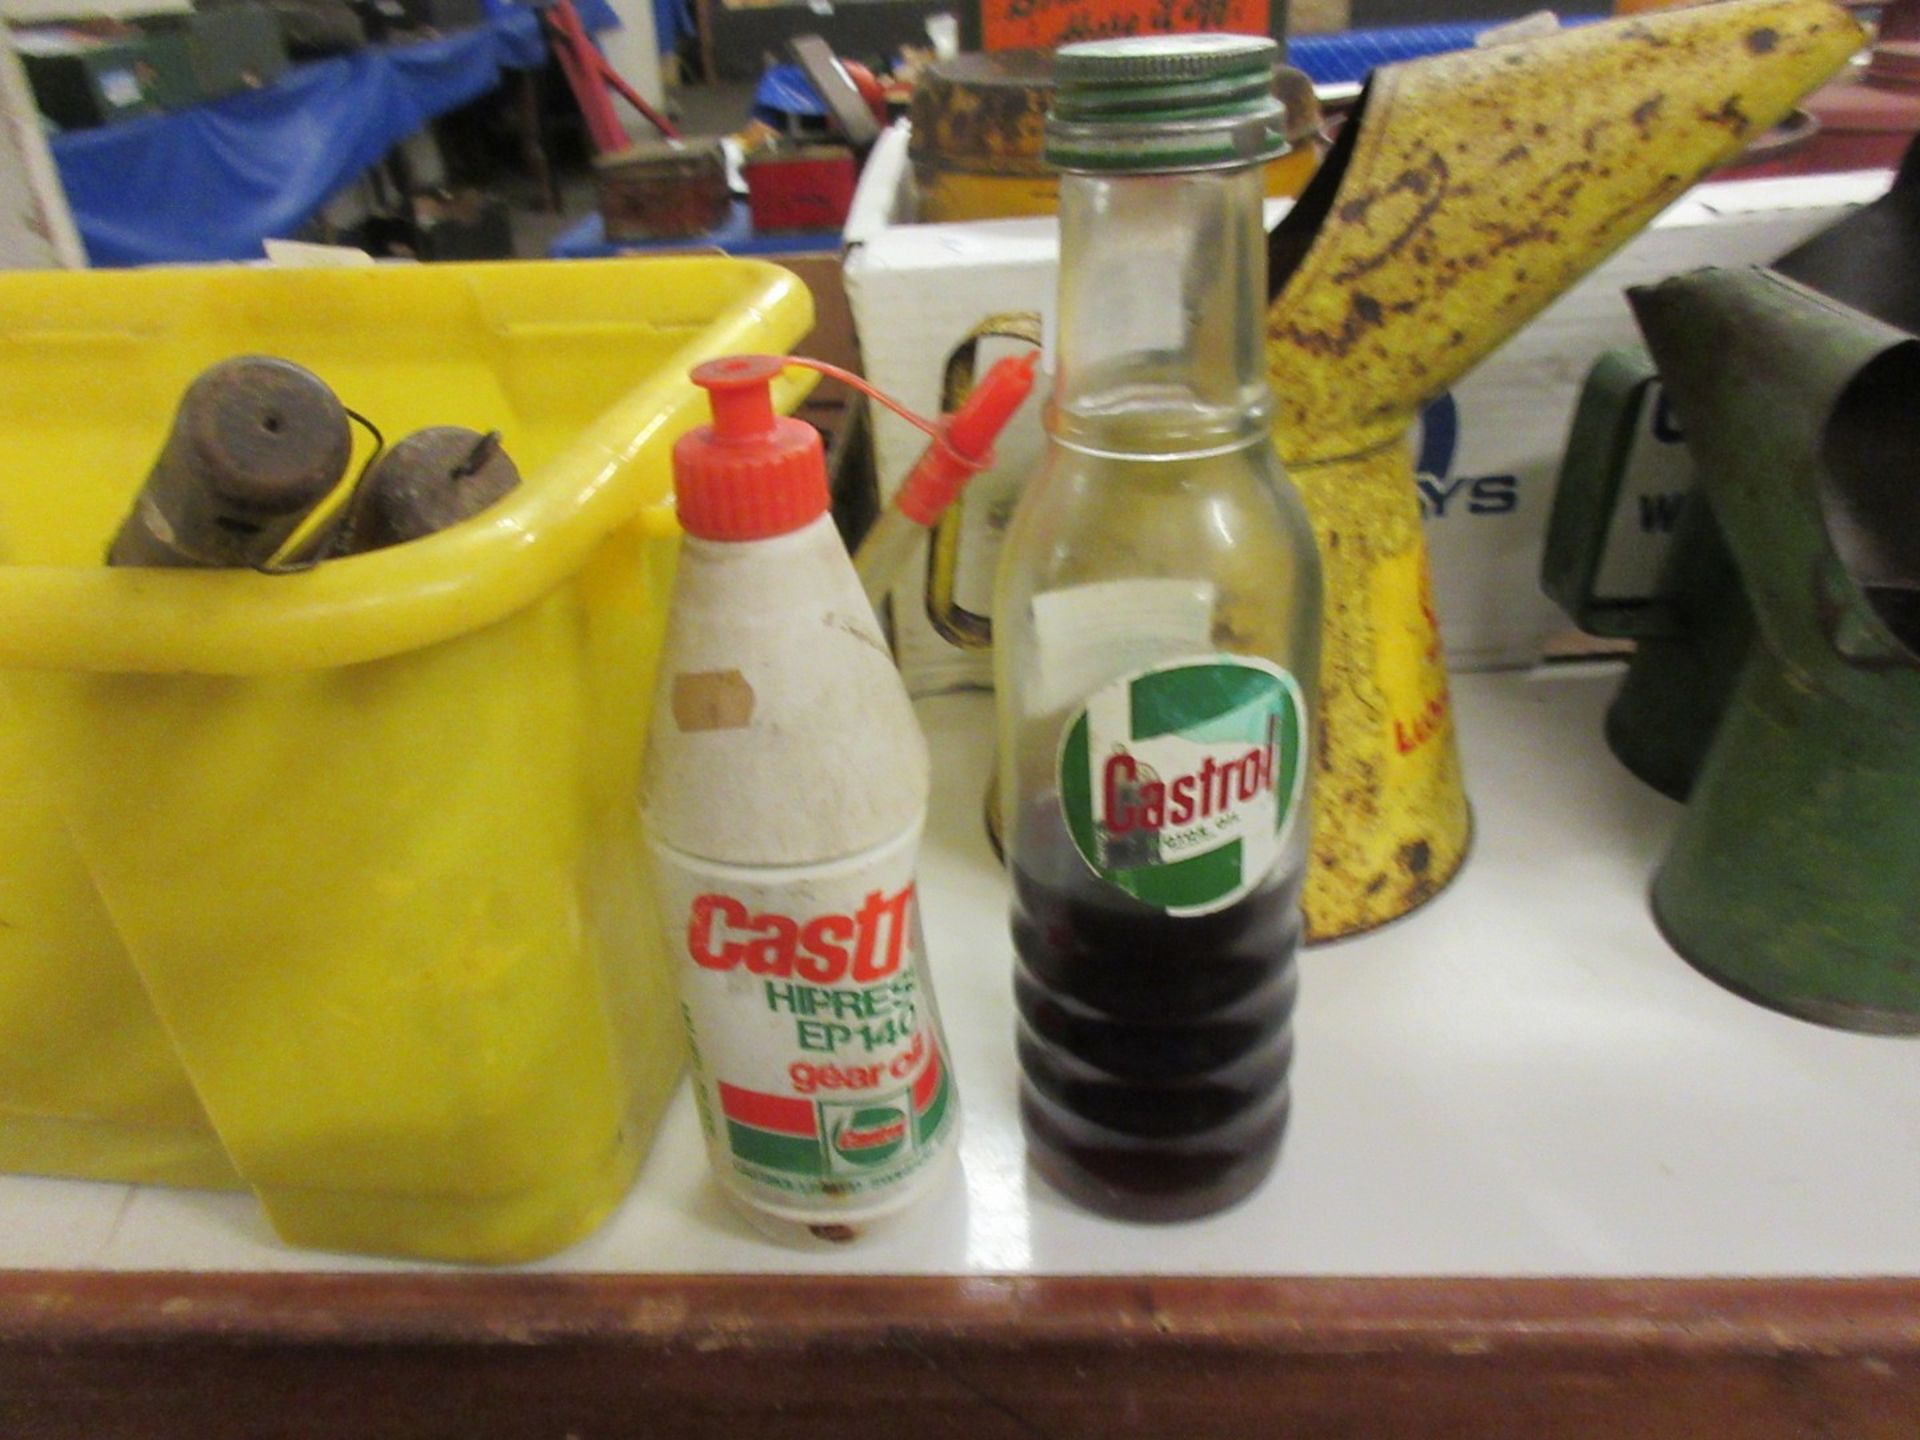 Two vintage port bottles of Castrol